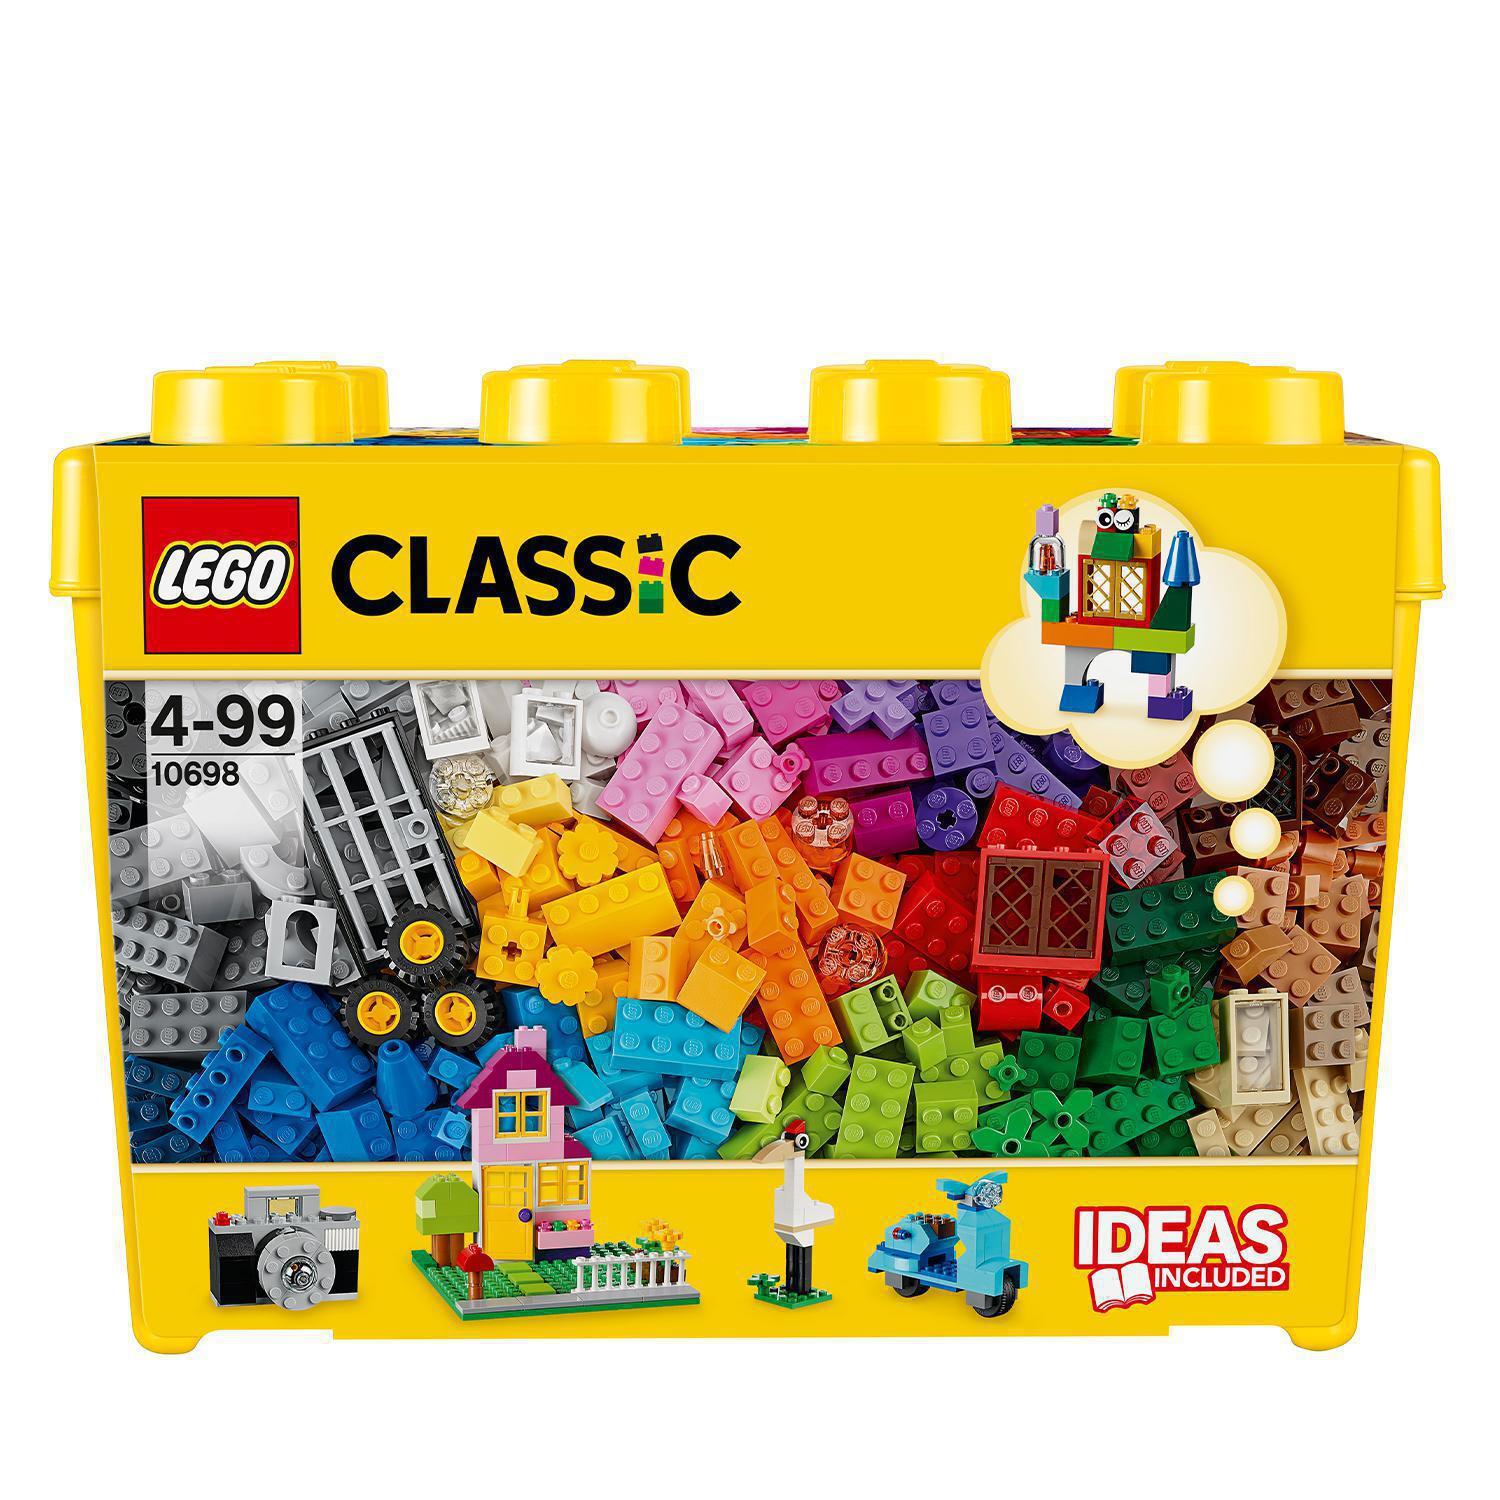 2€01 sur LEGO boîte de rangement tête de garçon petit 16 x 18,5 cm